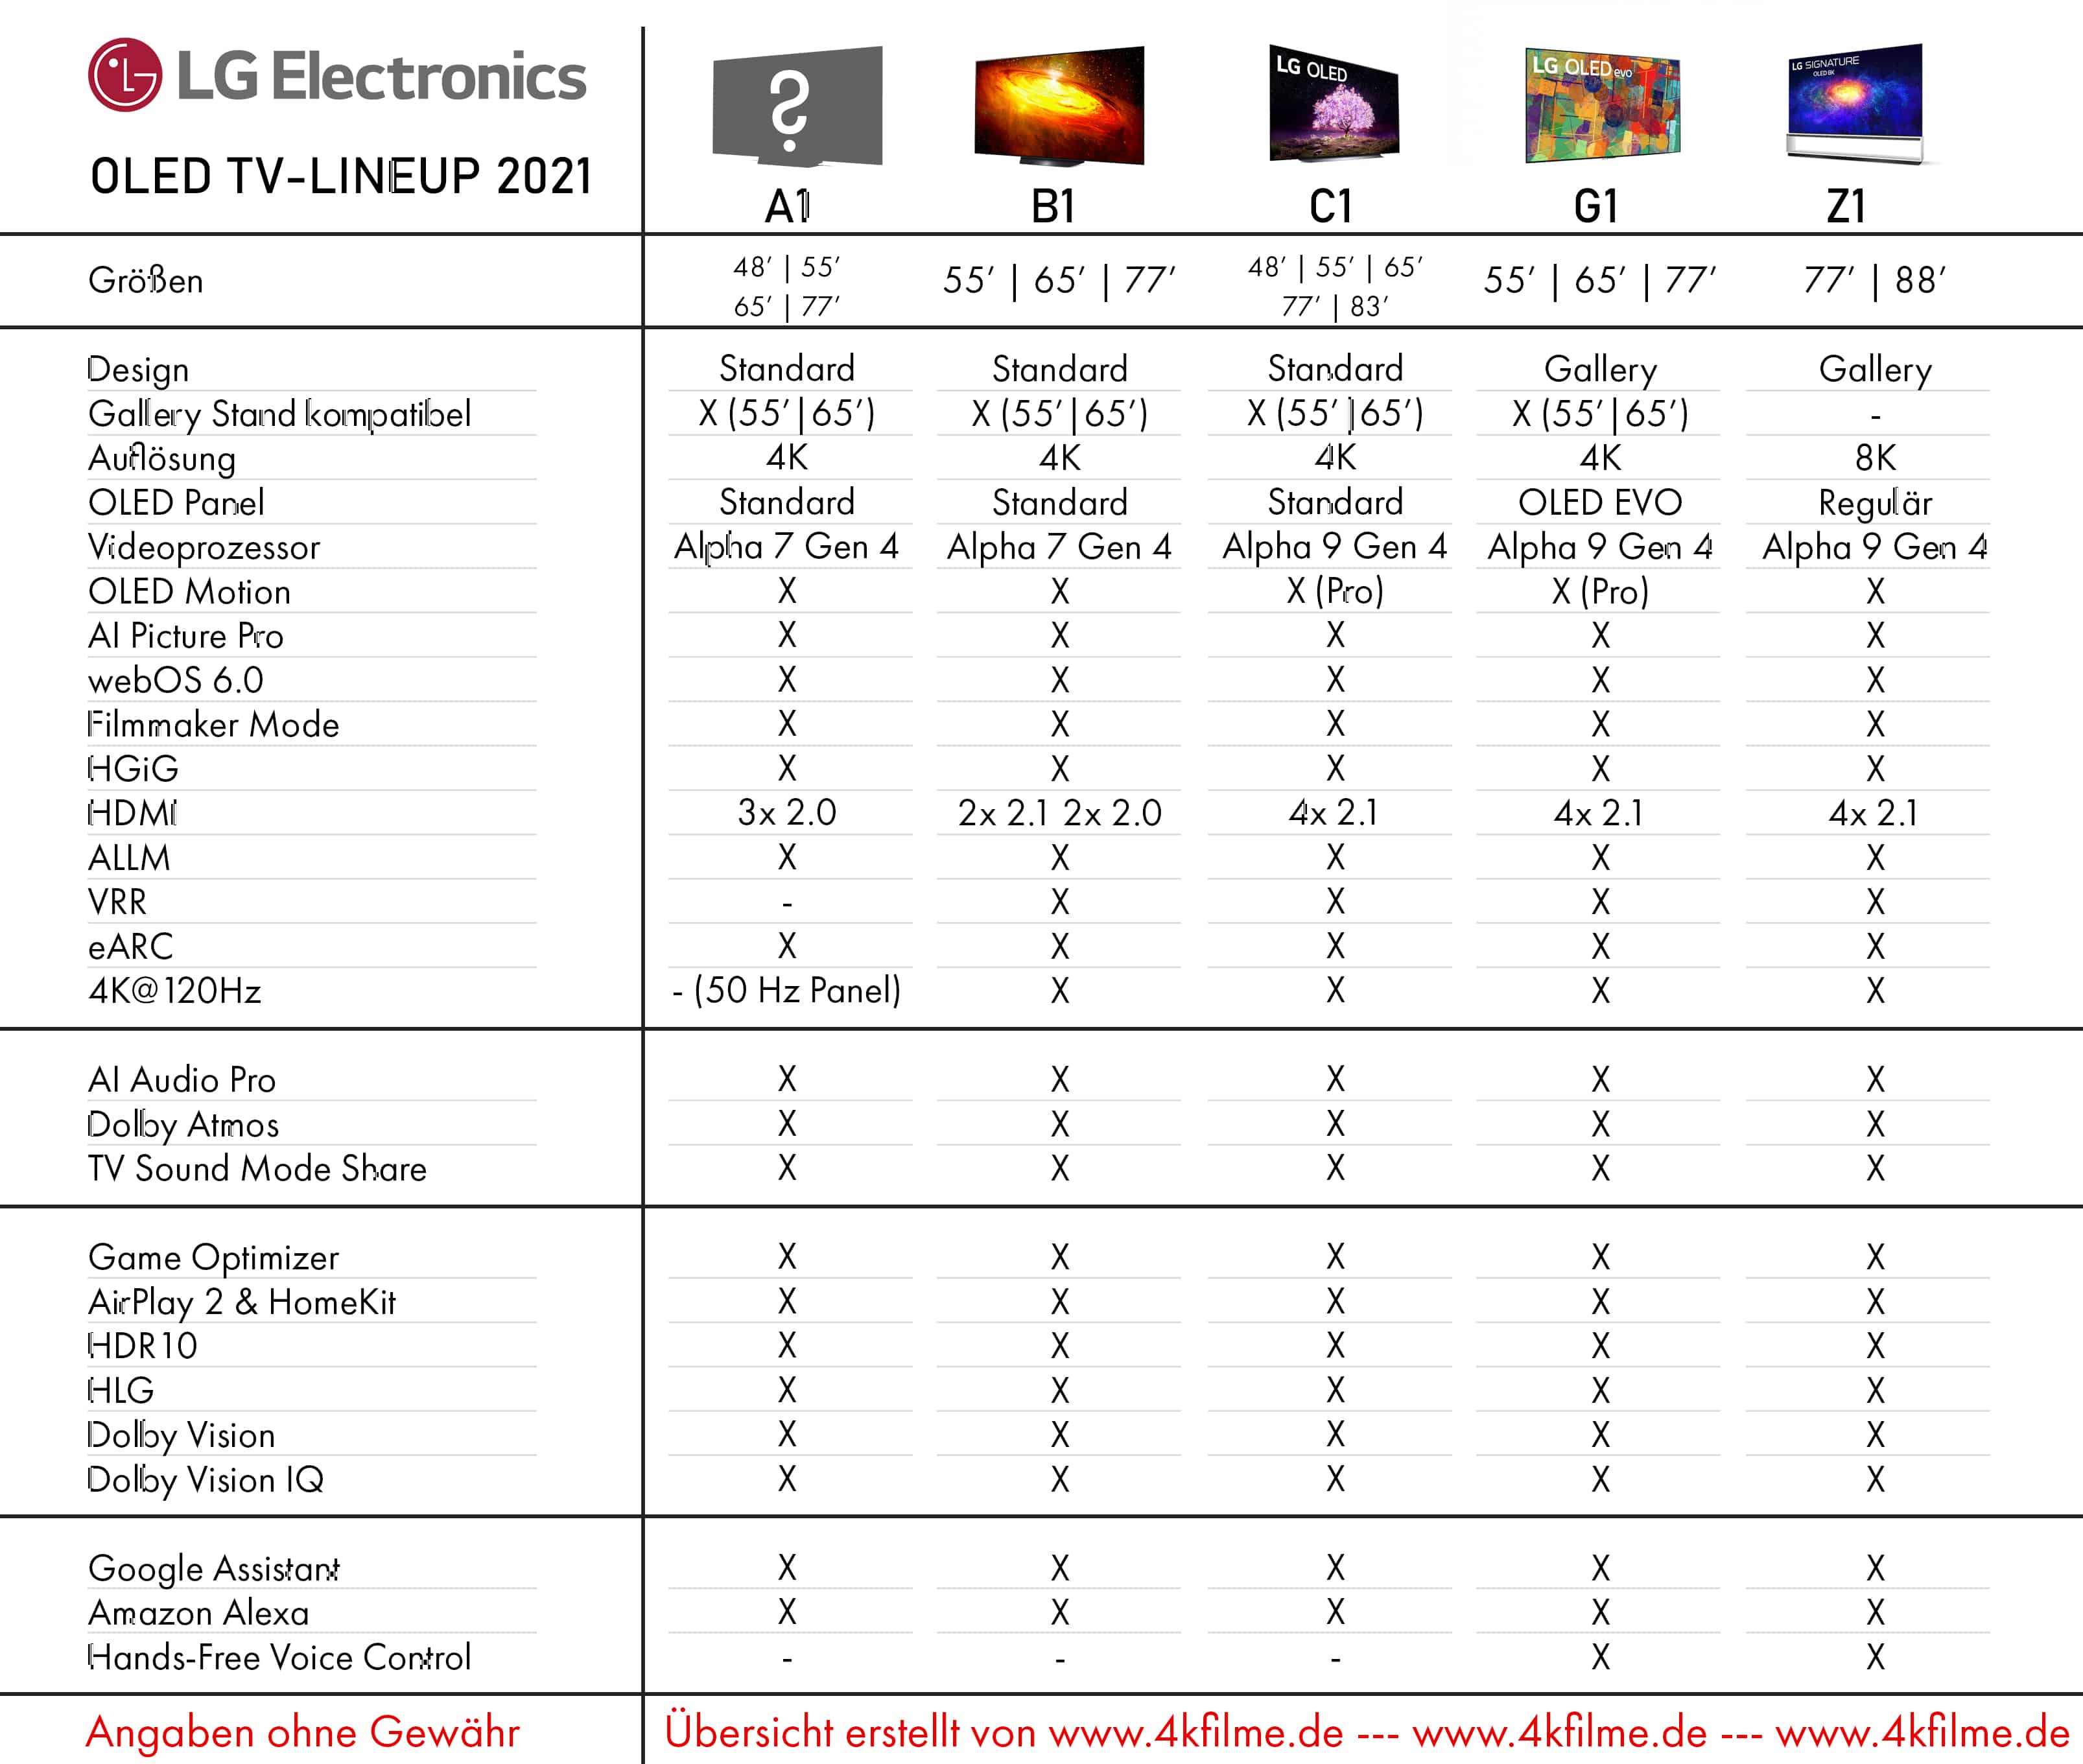 Список телевизоров lg. Таблица телевизоров LG 2021. LG TV 2021. Расшифровка моделей телевизоров LG 2021. Телевизоры LG OLED 2021.